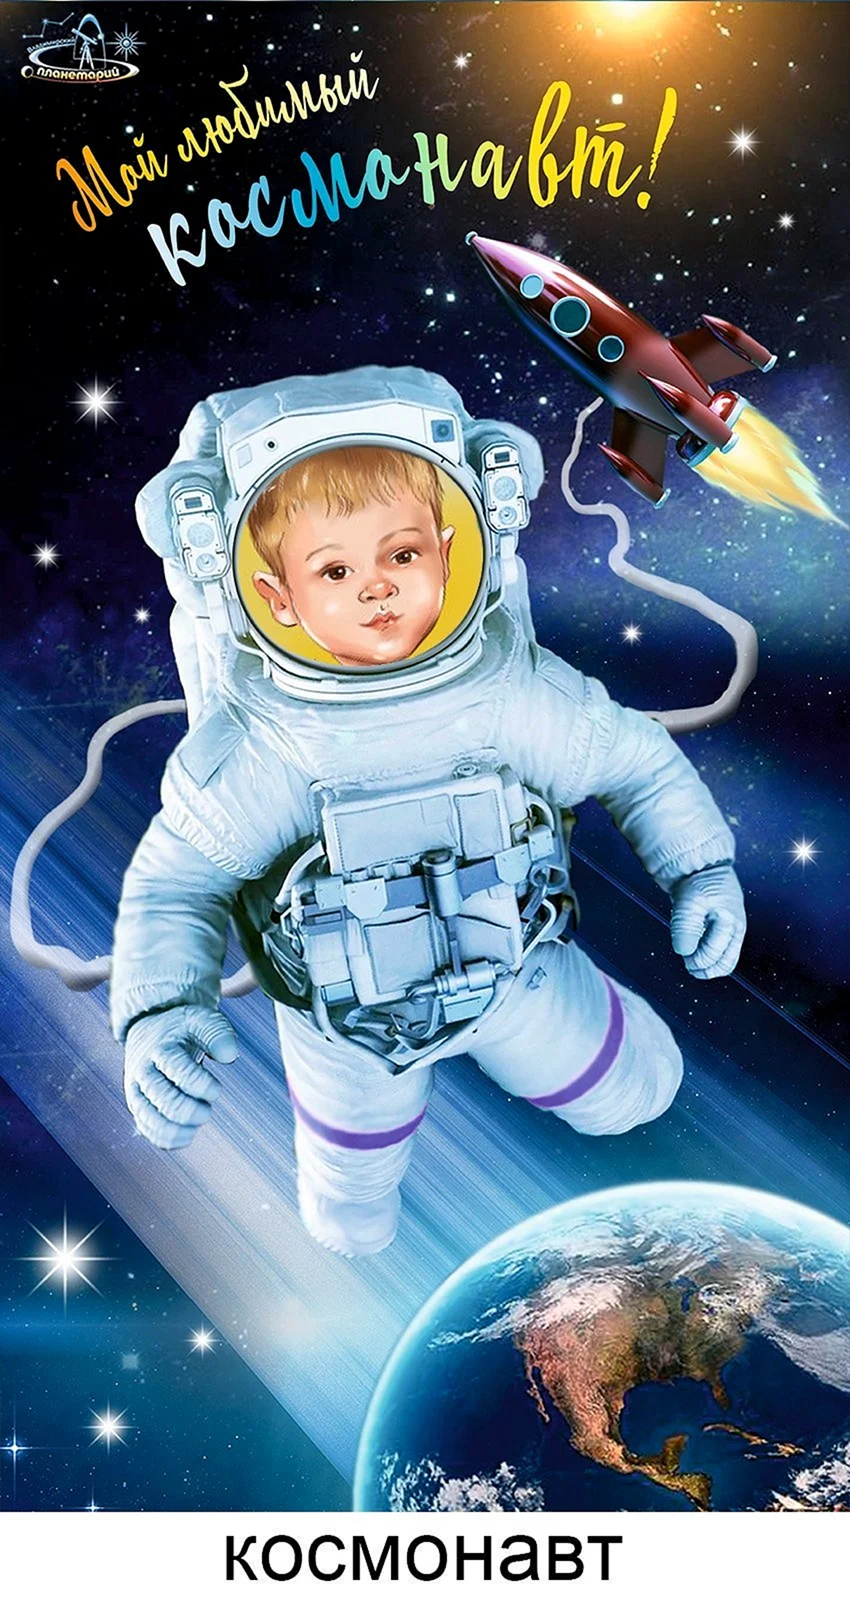 Космическая открытка